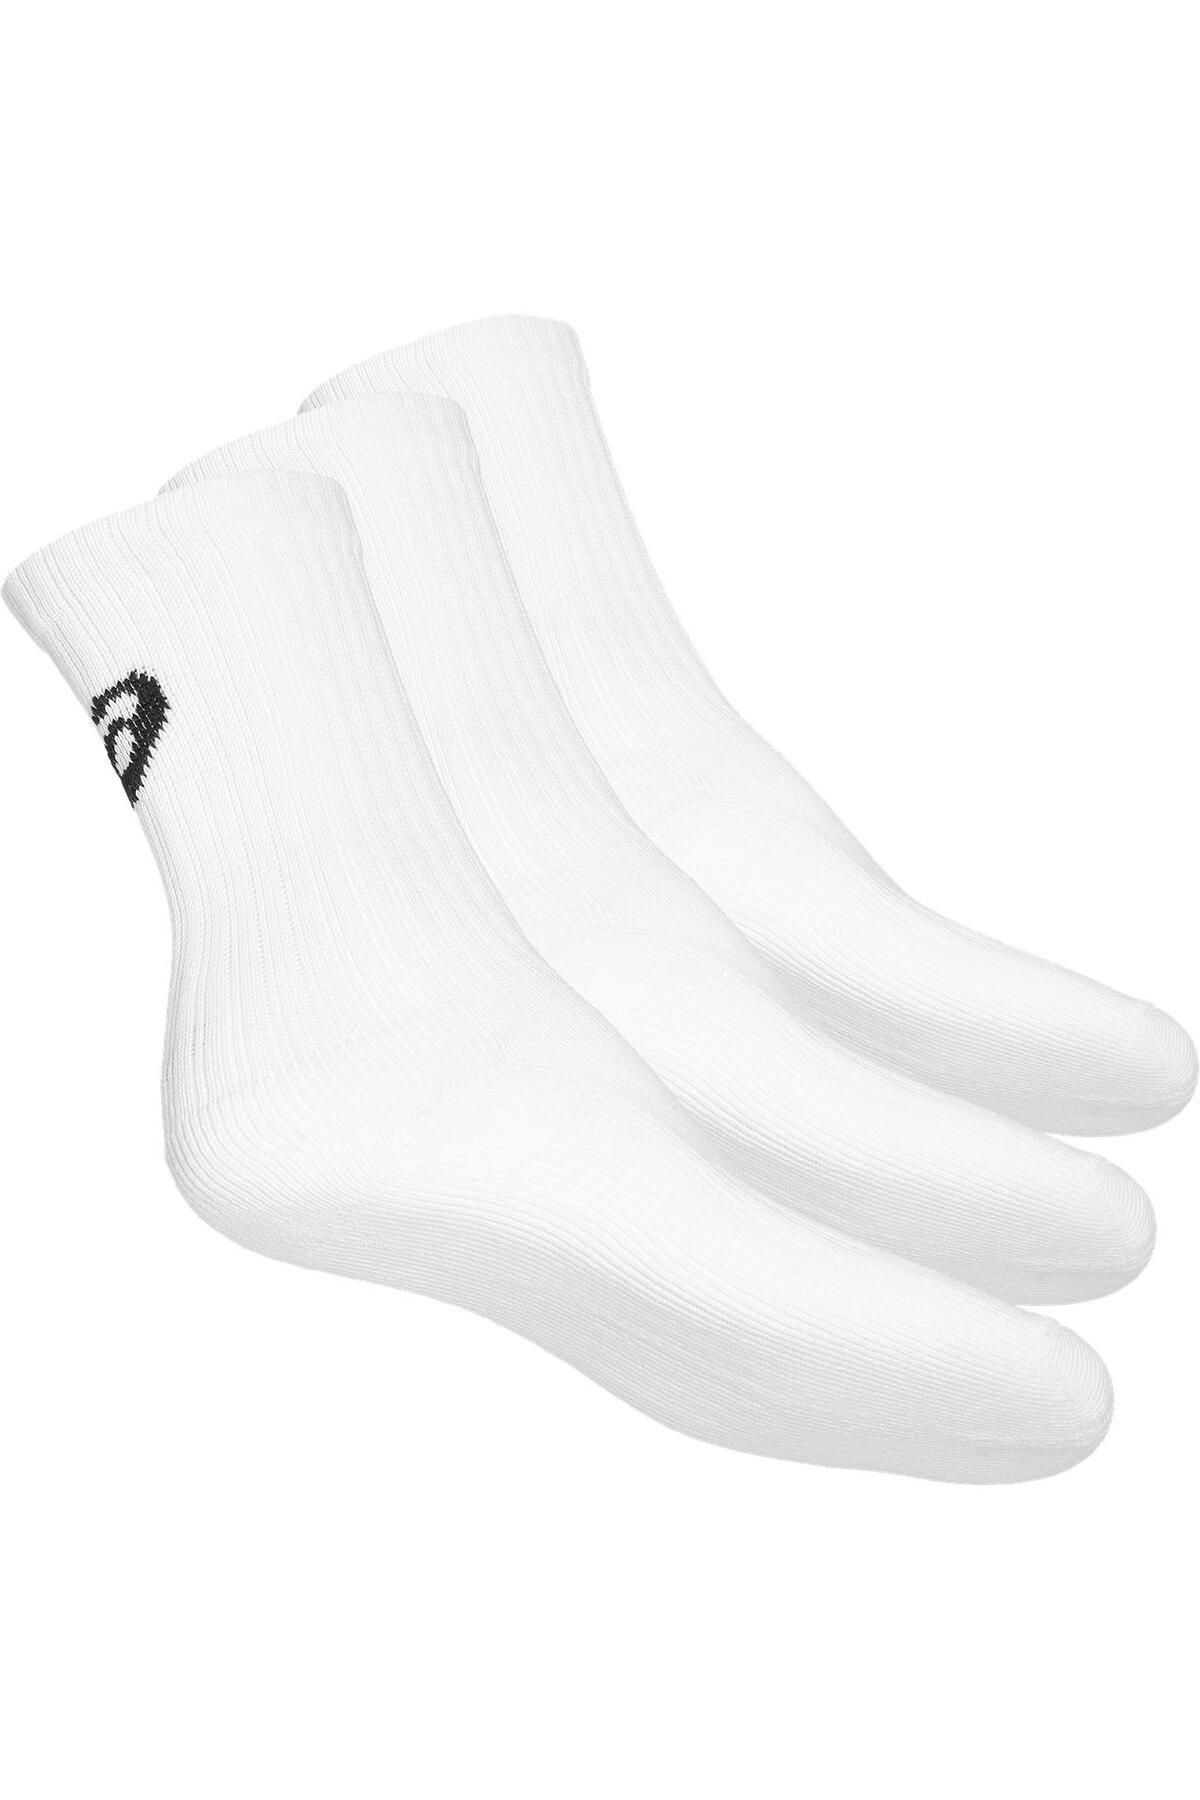 Asics 3ppk Crew Unisex Beyaz Çorap 155204-0001